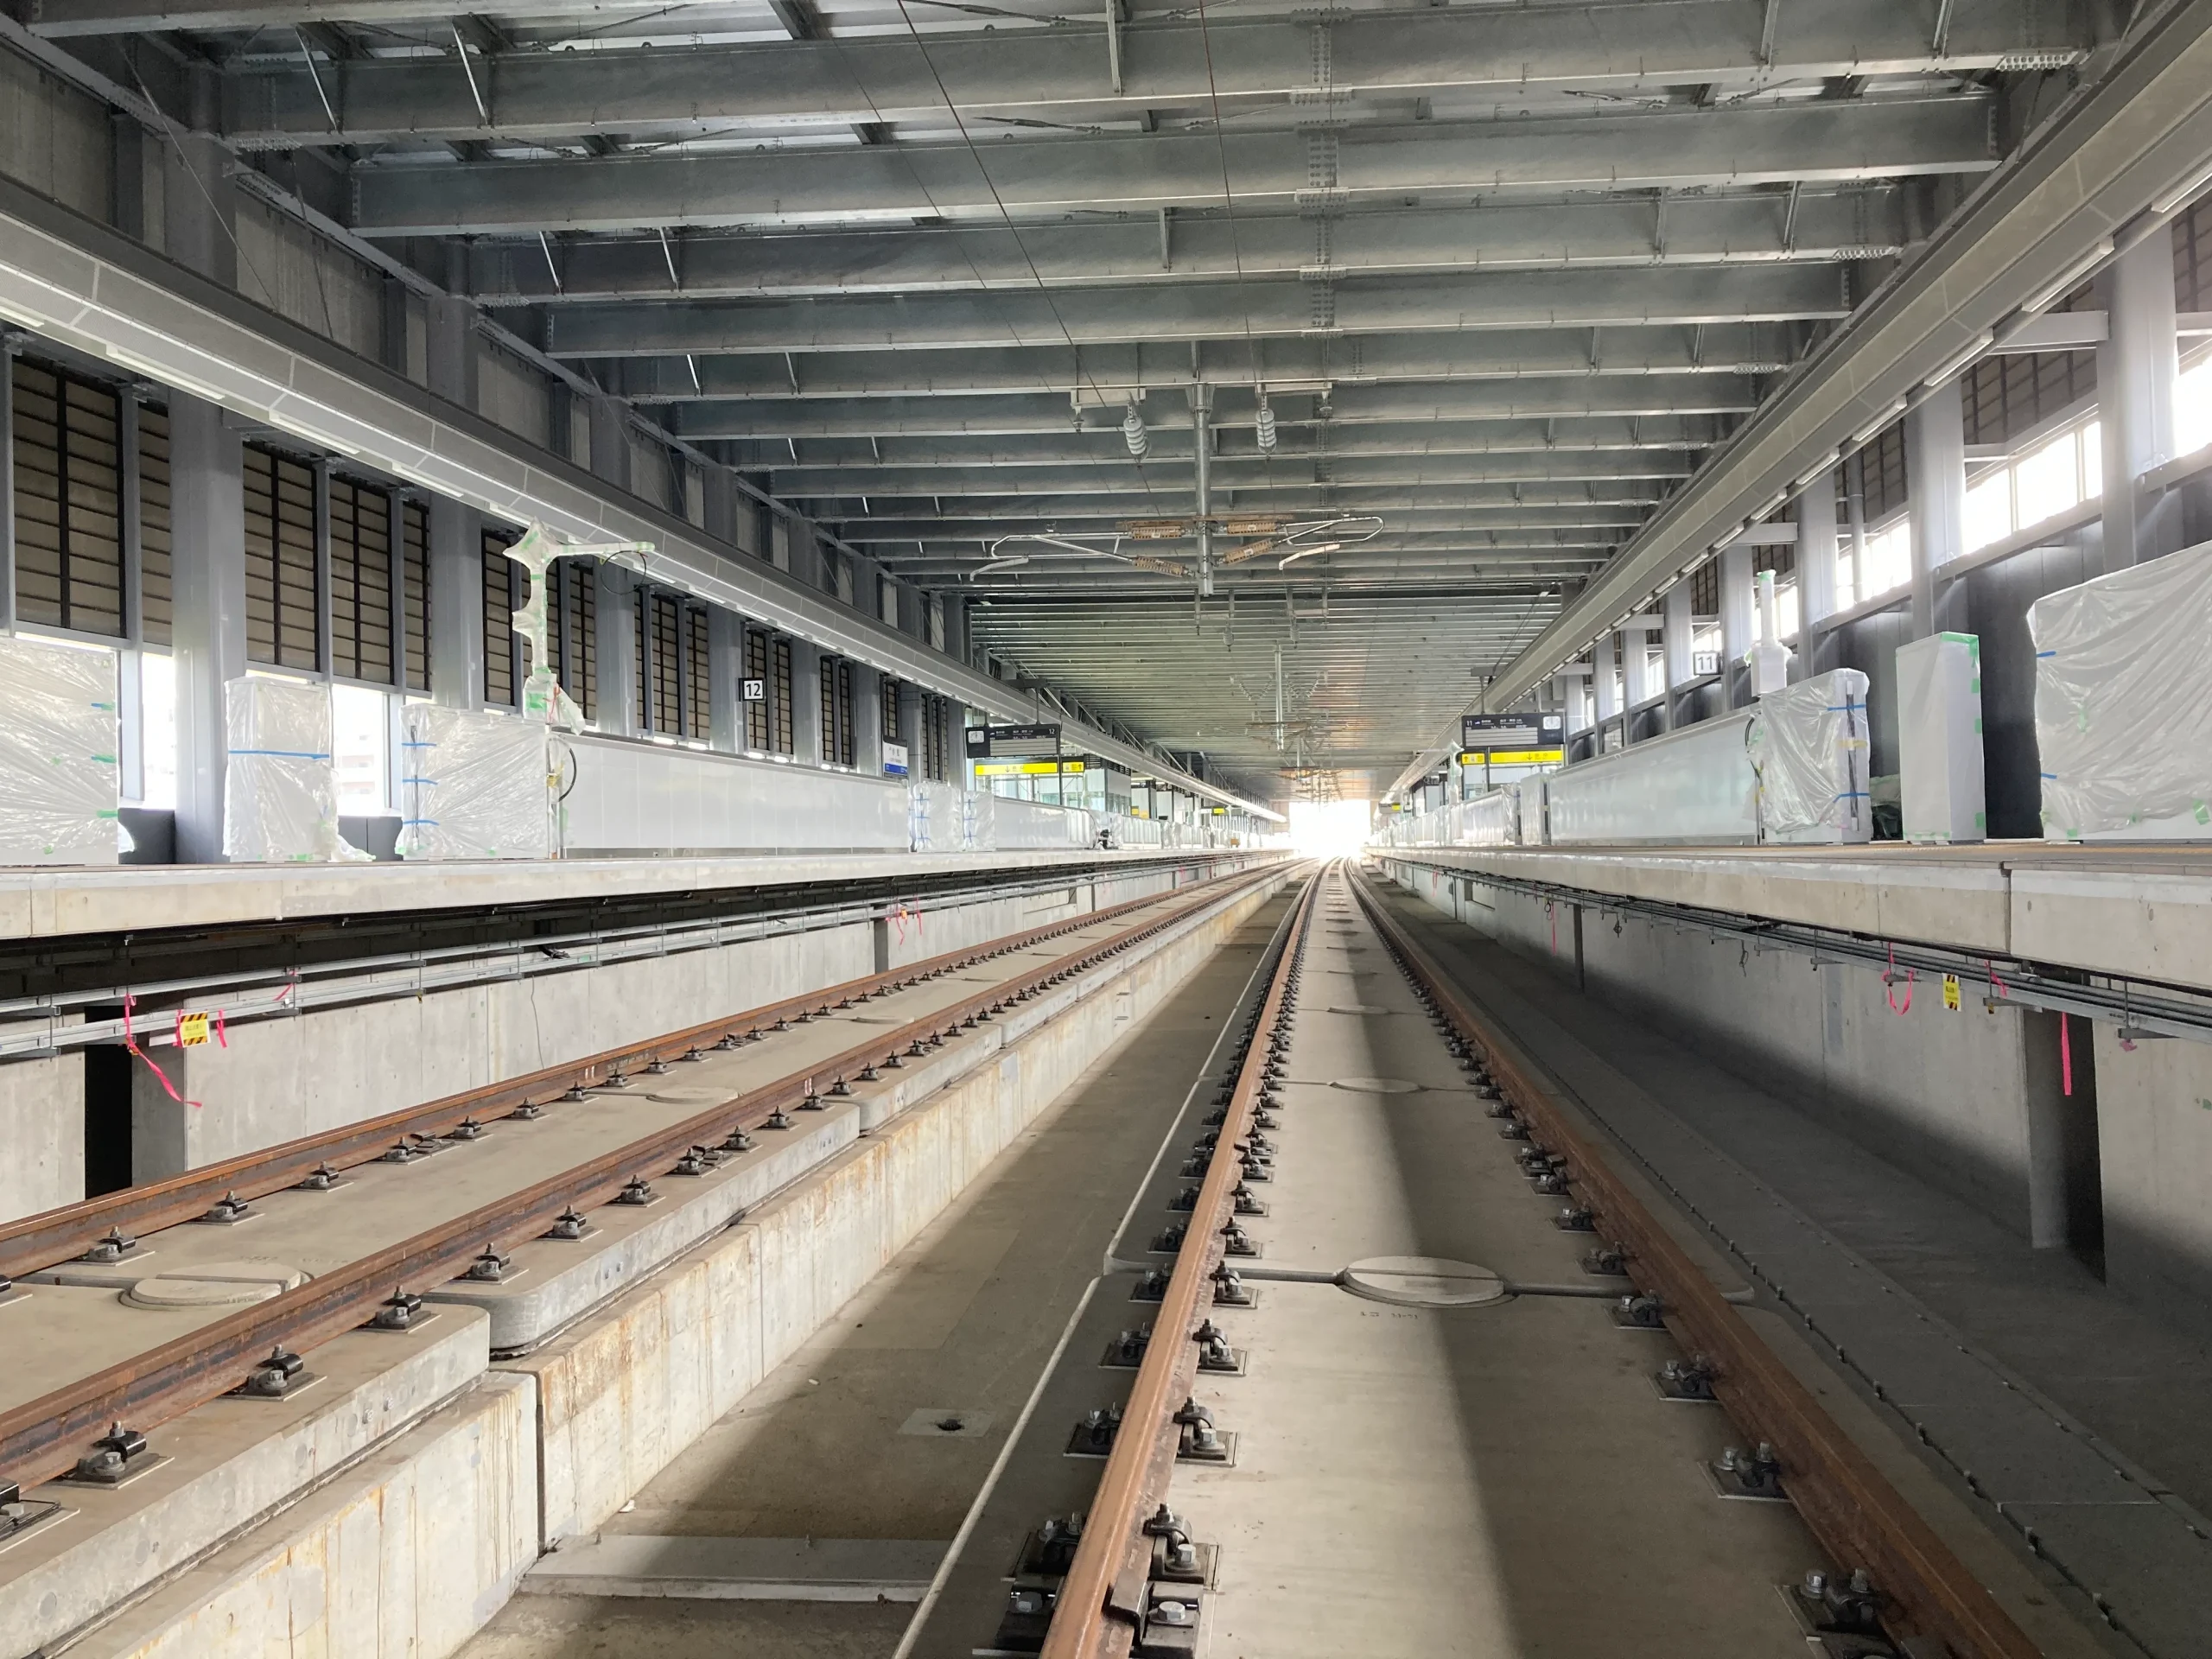 JR北陸新幹線 小松軌道敷設工事のサムネイル画像です